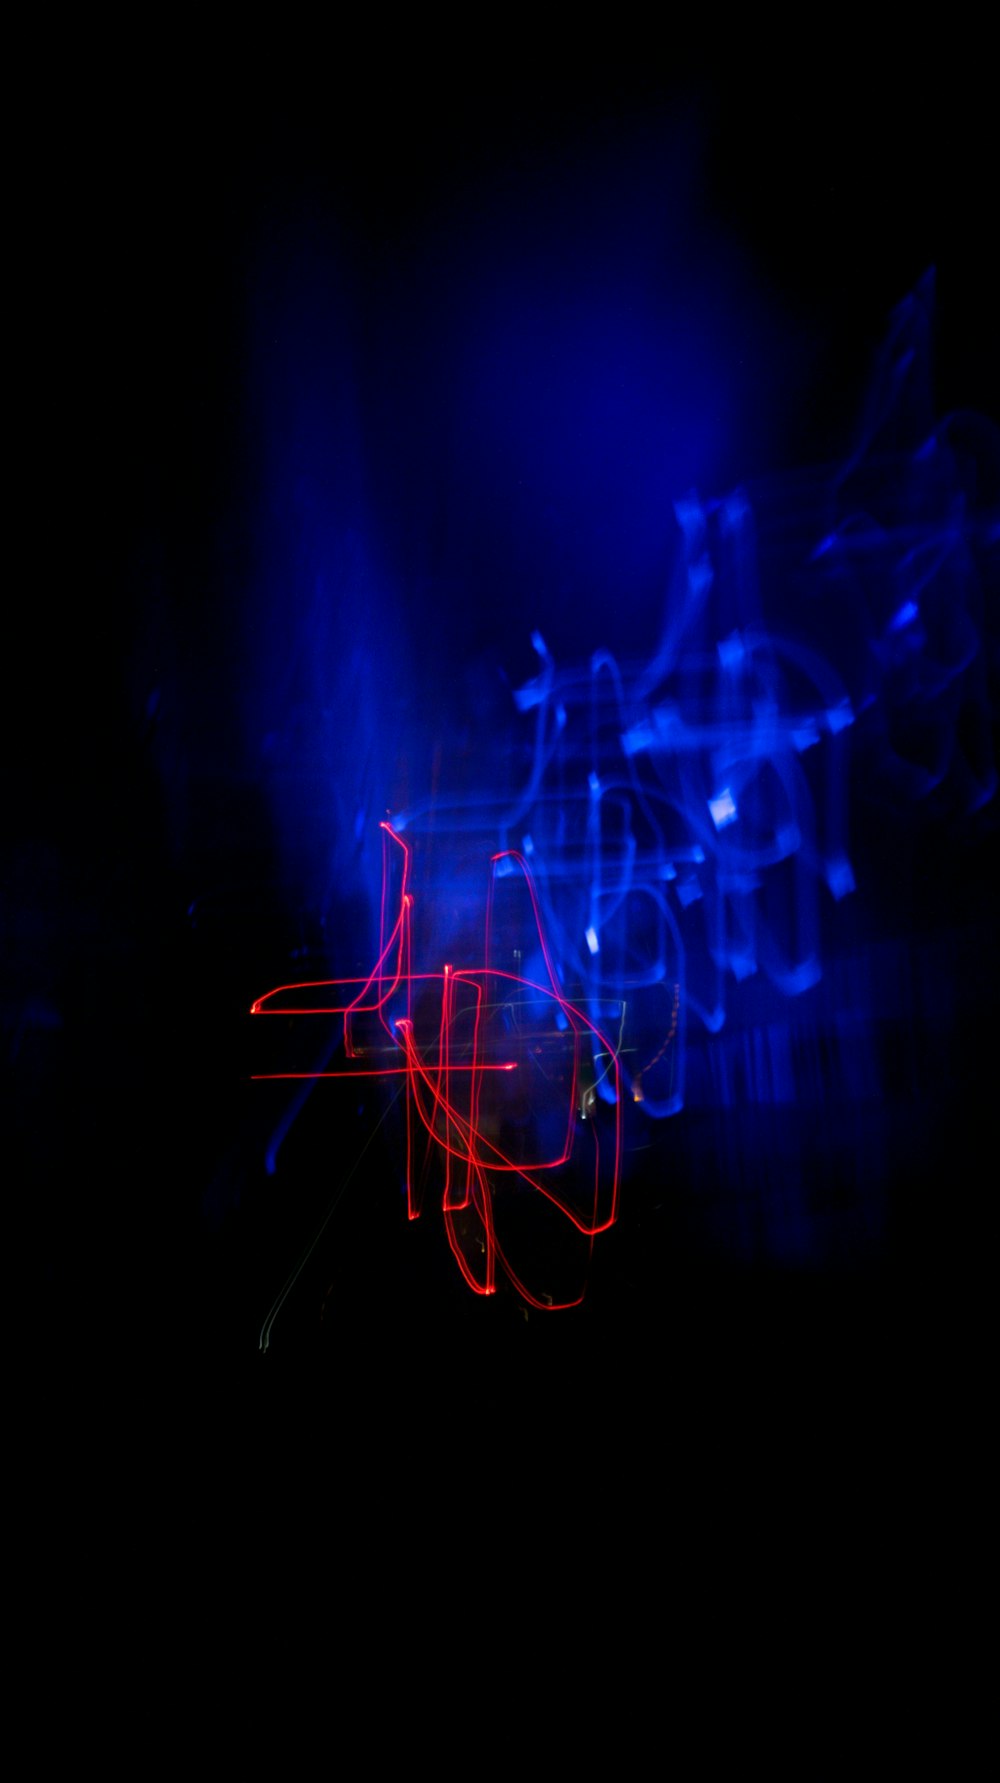 sinalização de luz neon azul e vermelha